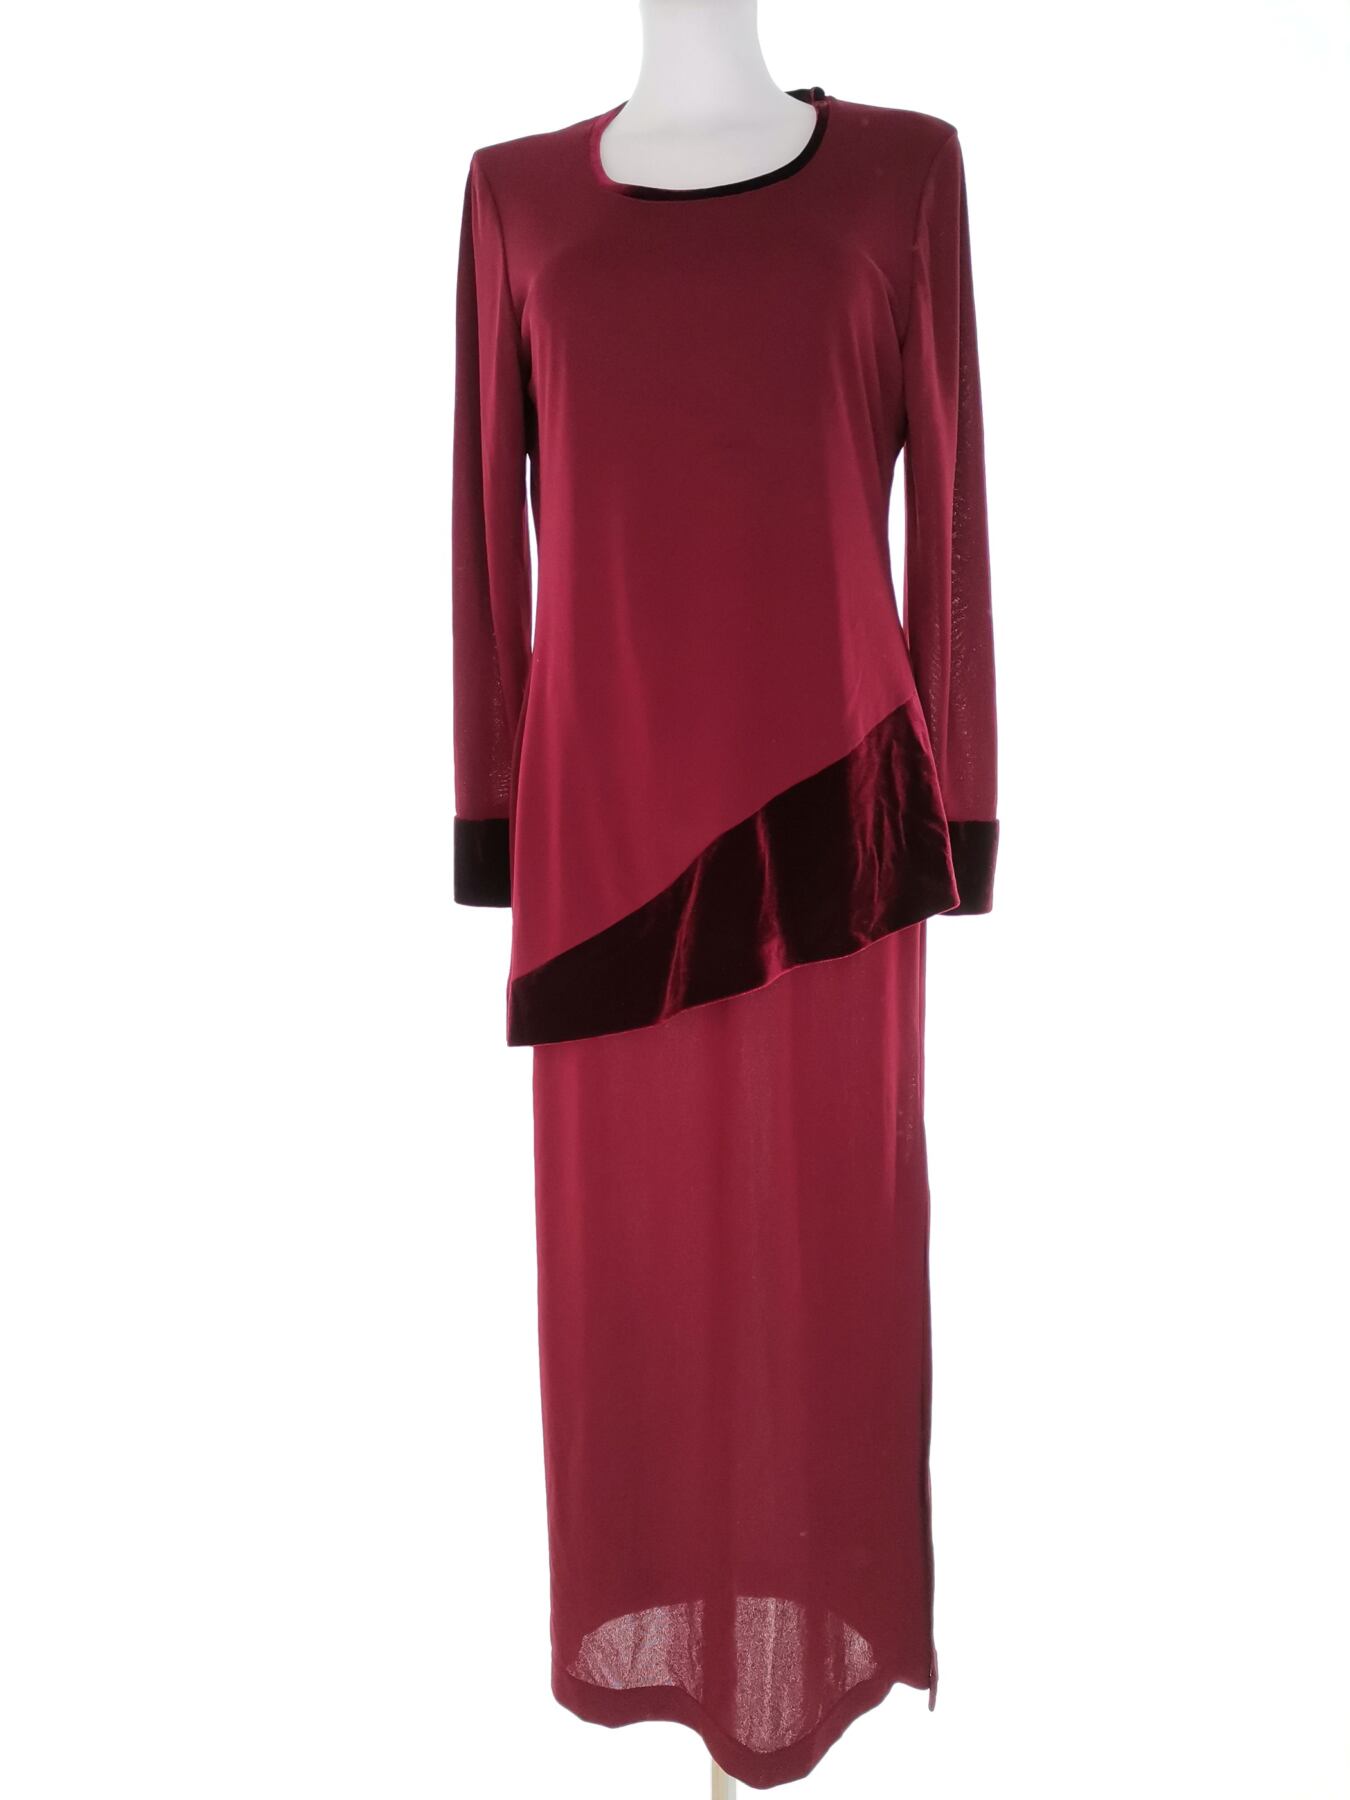 Rozmiar 12 (40) Kolor Bordowy Okrągły dekolt Sukienka Maxi Długi rękaw Długa